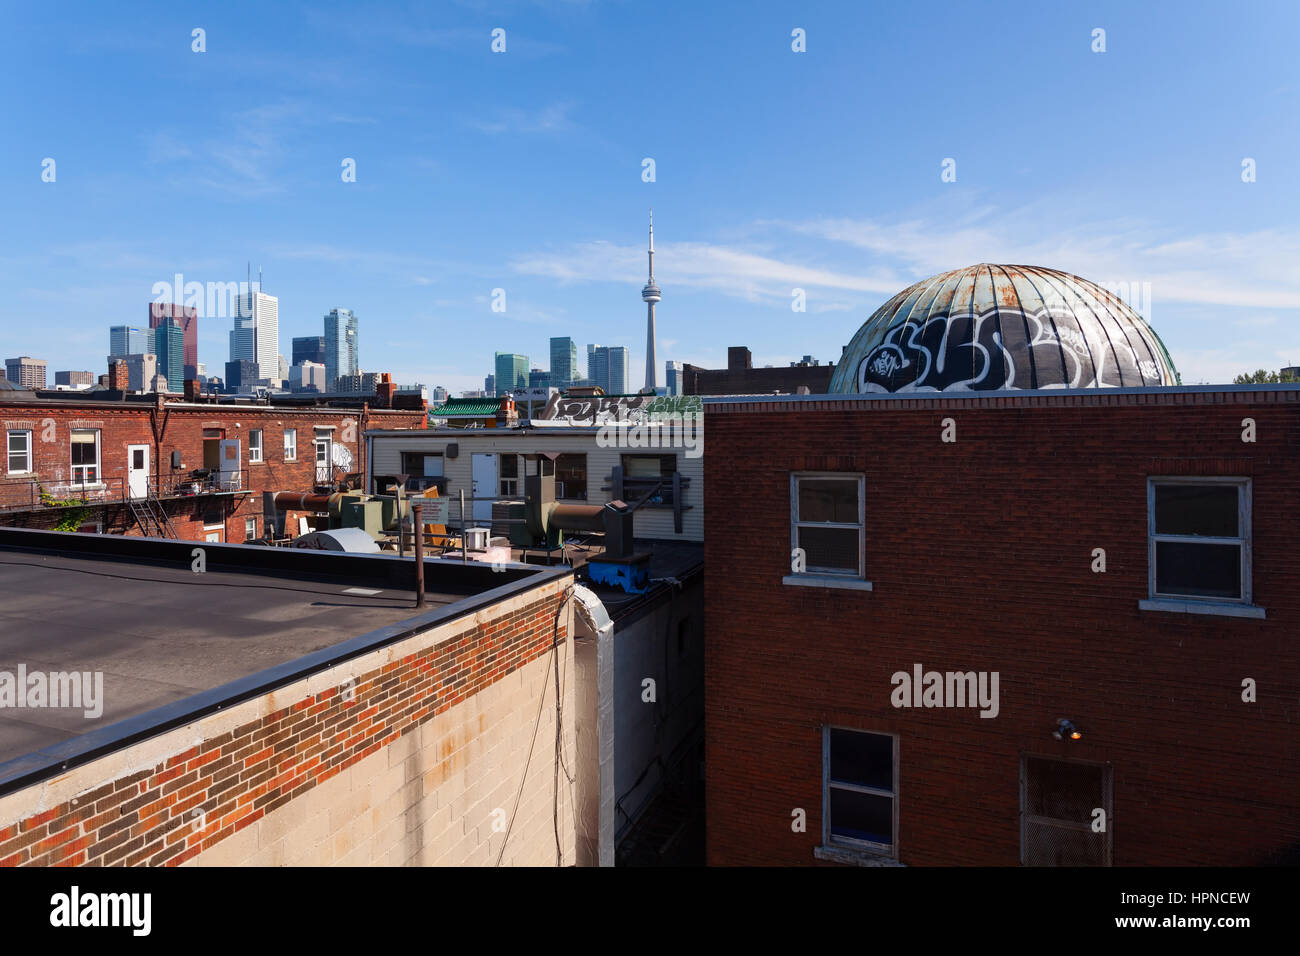 El centro de Toronto skyline como se ve desde el mercado de Kensington. Toronto, Ontario, Canadá. Foto de stock